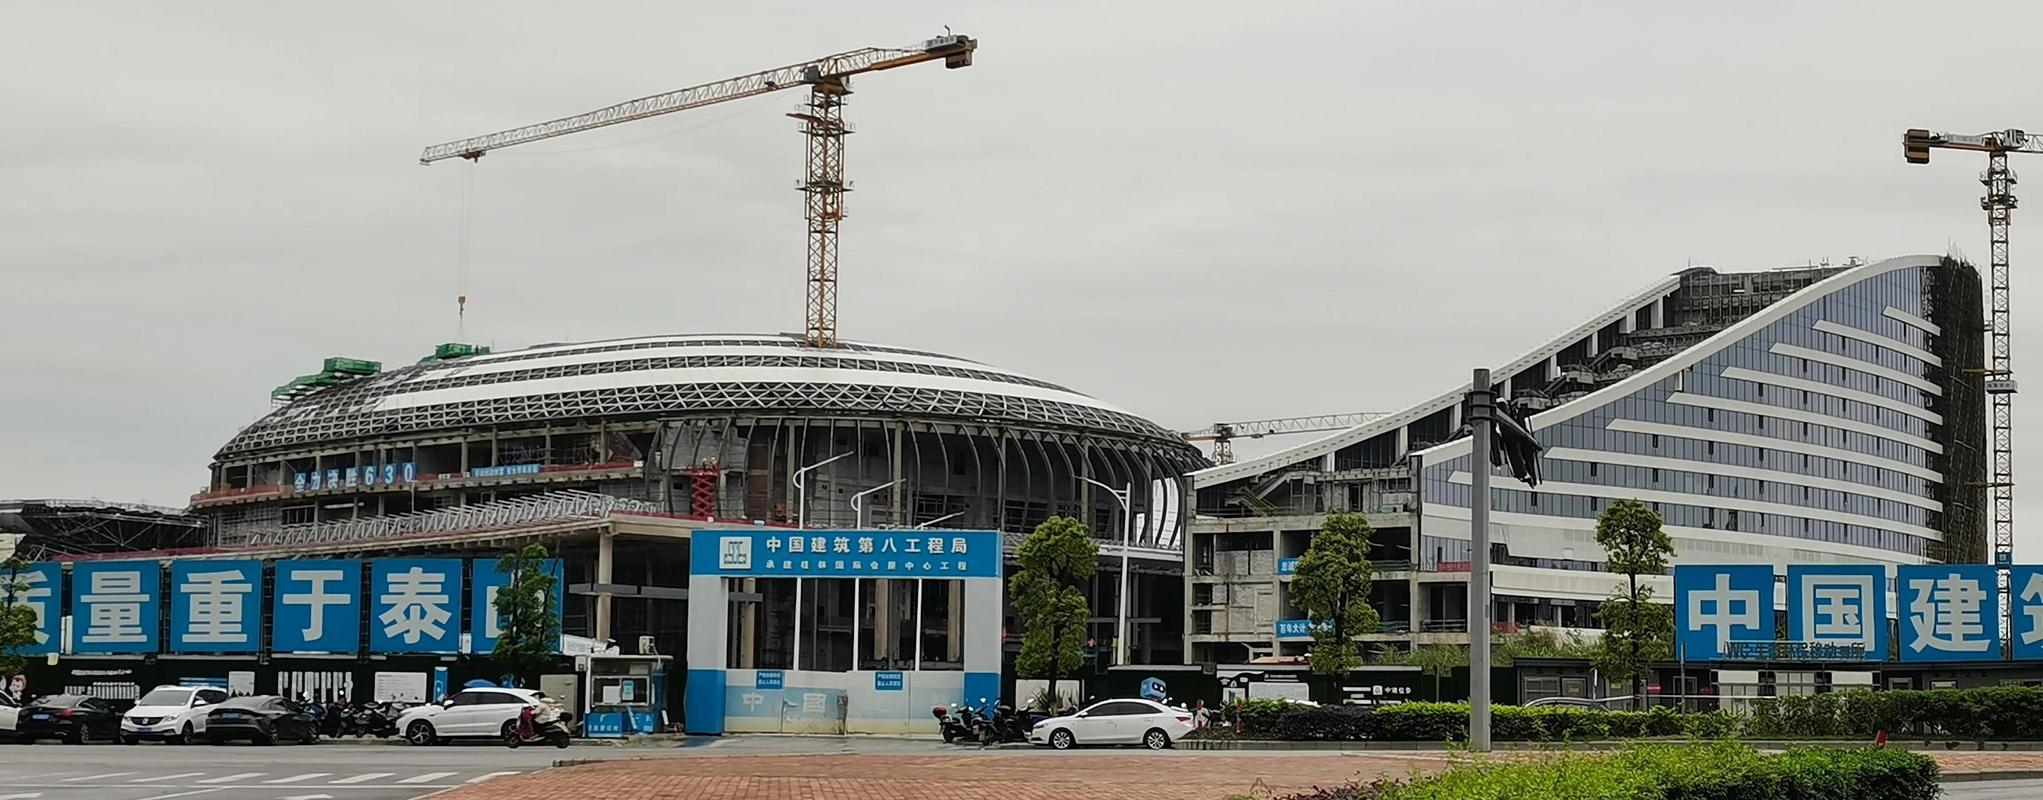 桂林新国际会展中心各个建筑现已壮观显现,一些后期的装修工作在加班